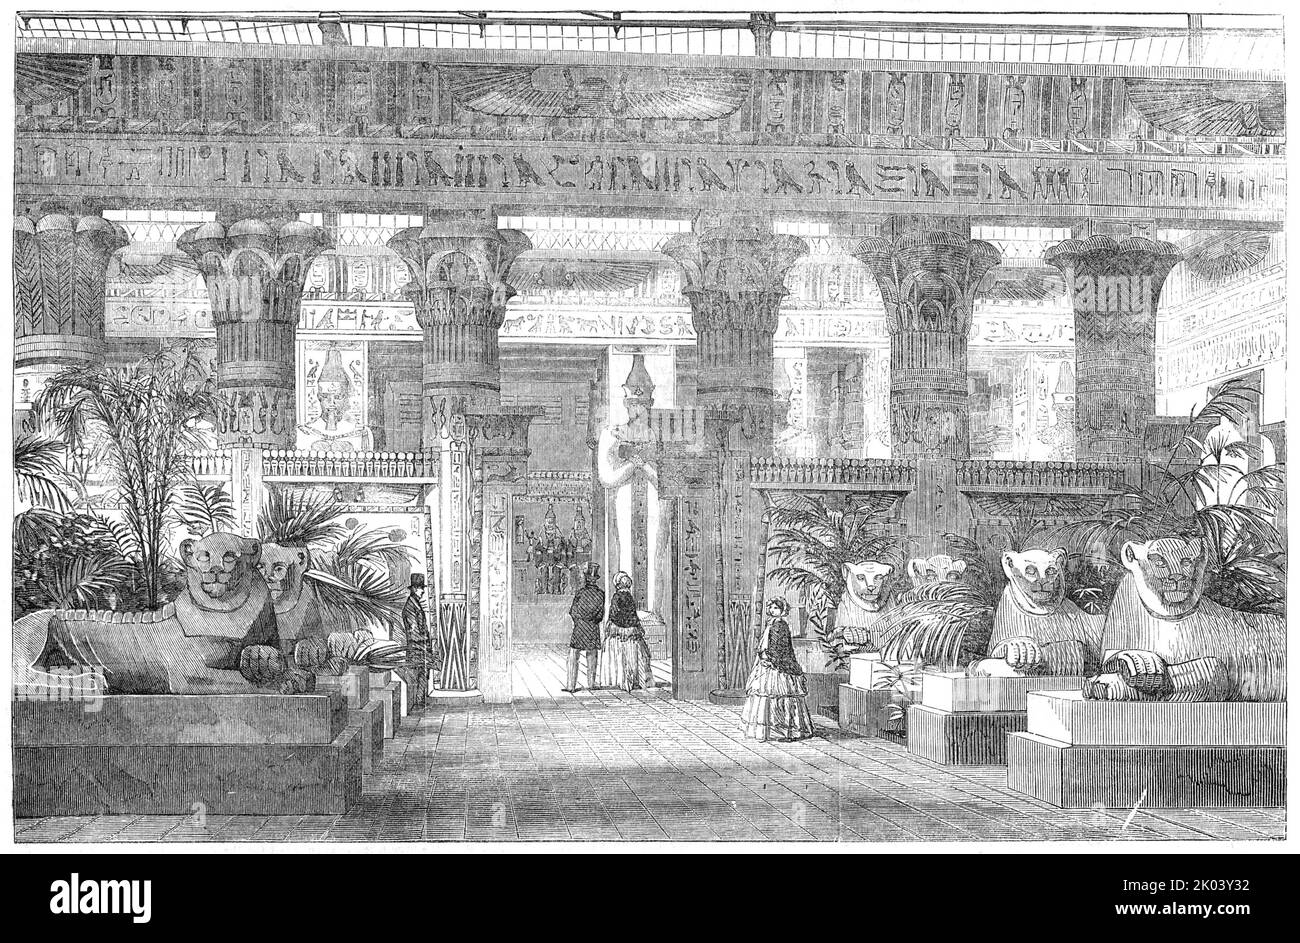 Le Palais de Cristal - entrée à la Cour égyptienne depuis la Nave, près de l'avenue des Lions, 1854. Répliques de la sculpture et de l'architecture égyptiennes anciennes à Sydenham, dans le sud de Londres. 'Nous nous approchons de la Cour égyptienne de la Nave par une avenue de lions, coulés d'une paire d'Égypte par Lord Prudhoe (l'actuel duc de Northumberland), et nous avons devant nous les murs extérieurs et les colonnes d'un temple, non pris d'une structure particulière, Mais composé de diverses sources, pour illustrer les colonnes et les capitales égyptiennes pendant la période Ptolemaic, quelque part environ 300 ans avant J.-C. sur les murs Banque D'Images